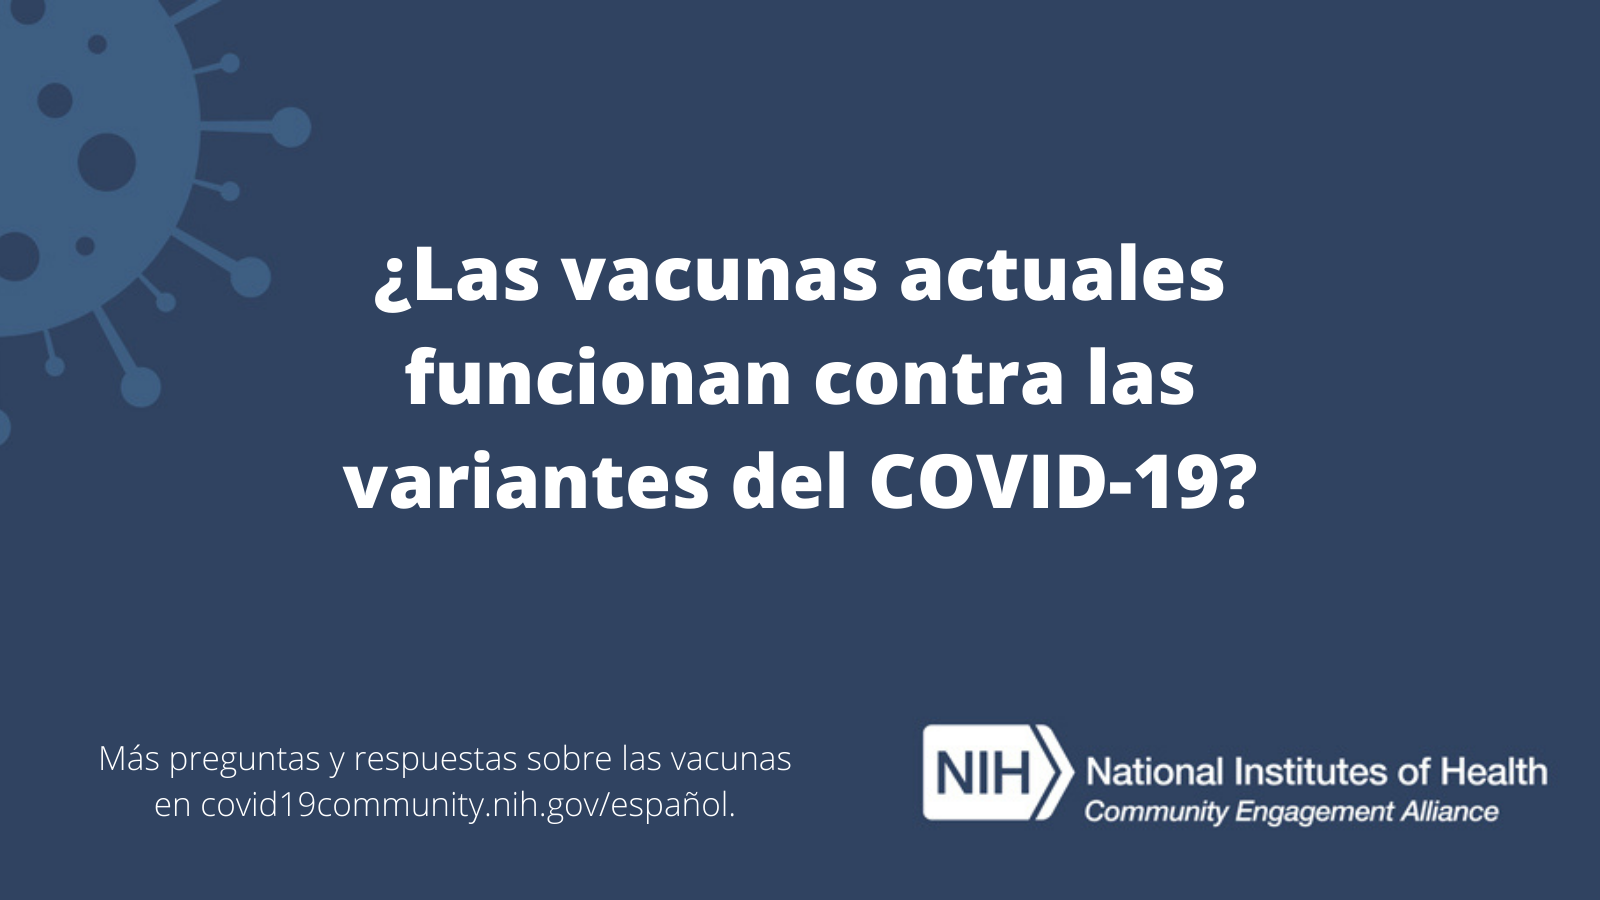 ¿Las vacunas actuales funcionan contra las variantes del COVID-19? Más preguntas y respuestas sobre las vacunas en covid19community.nih.gov/español.